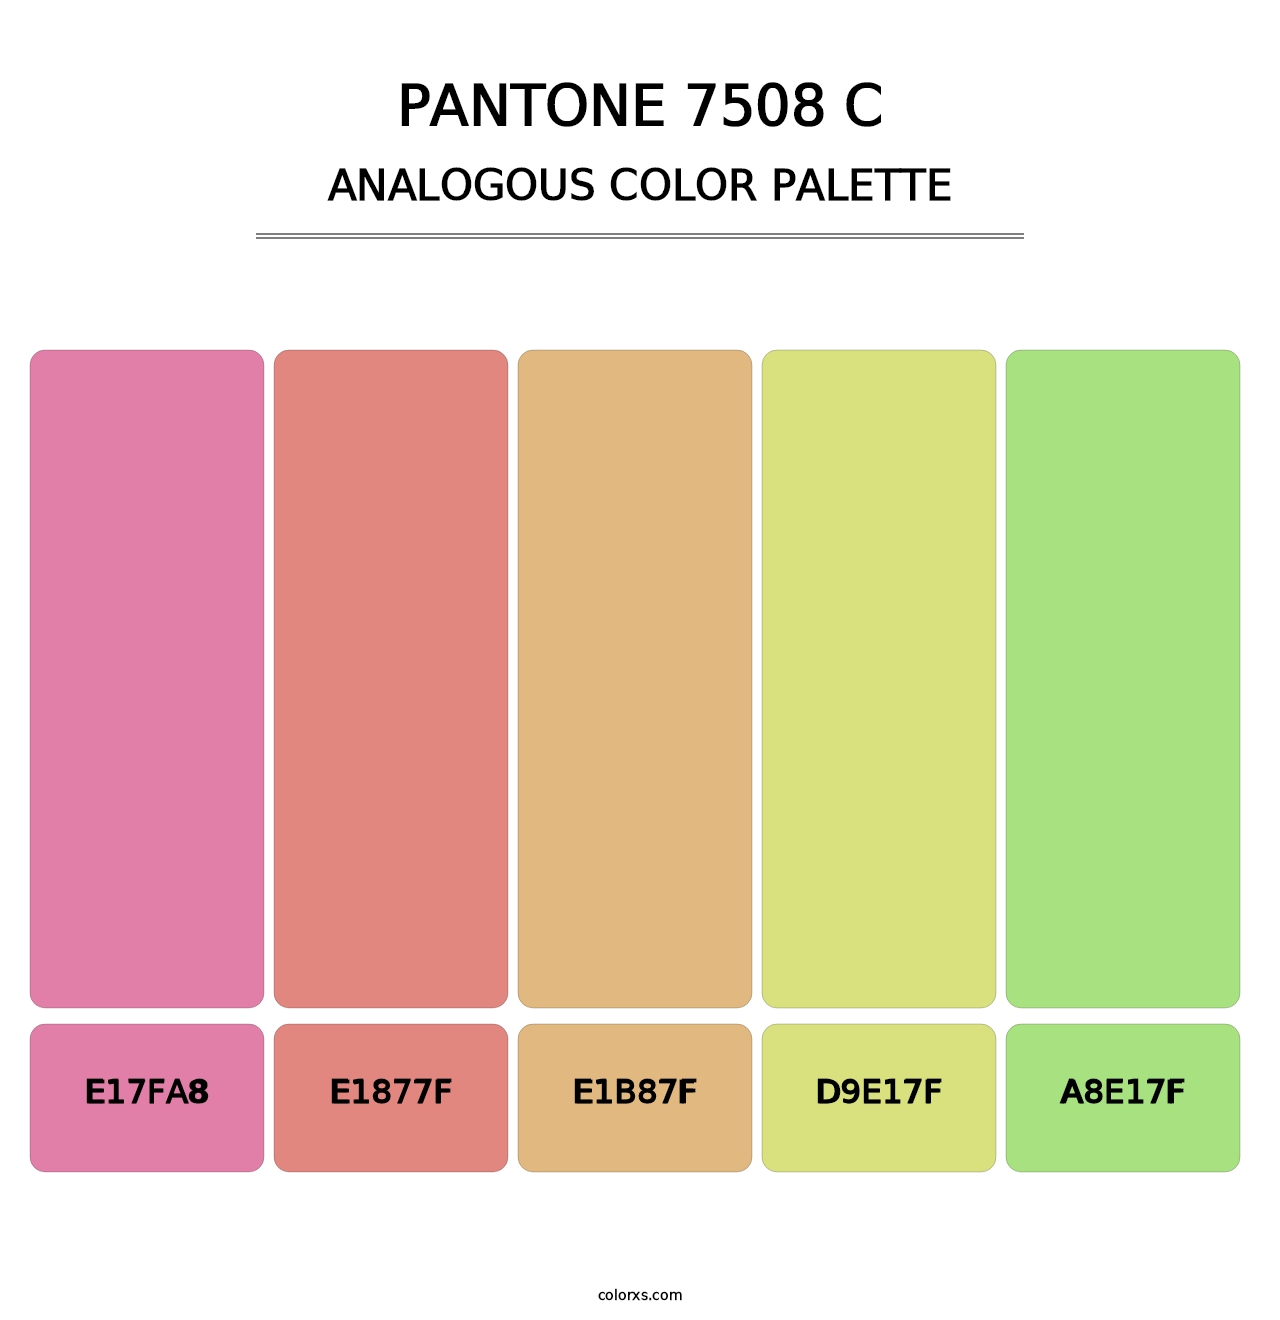 PANTONE 7508 C - Analogous Color Palette